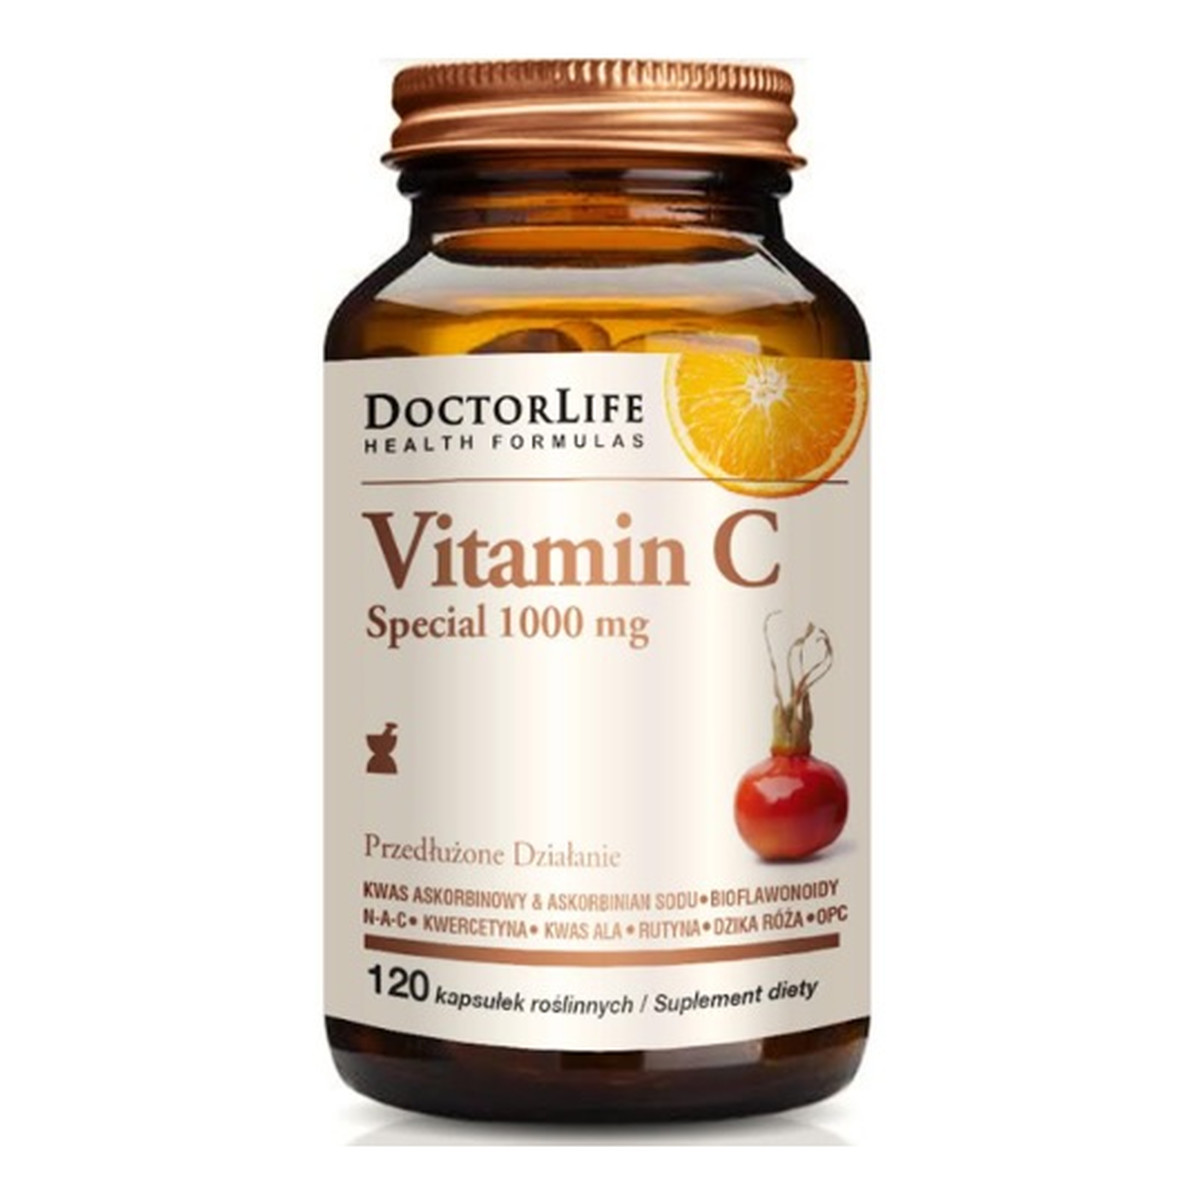 Doctor Life Vitamin c special 1000mg o przedłużonym działaniu suplement diety 120 kapsułek